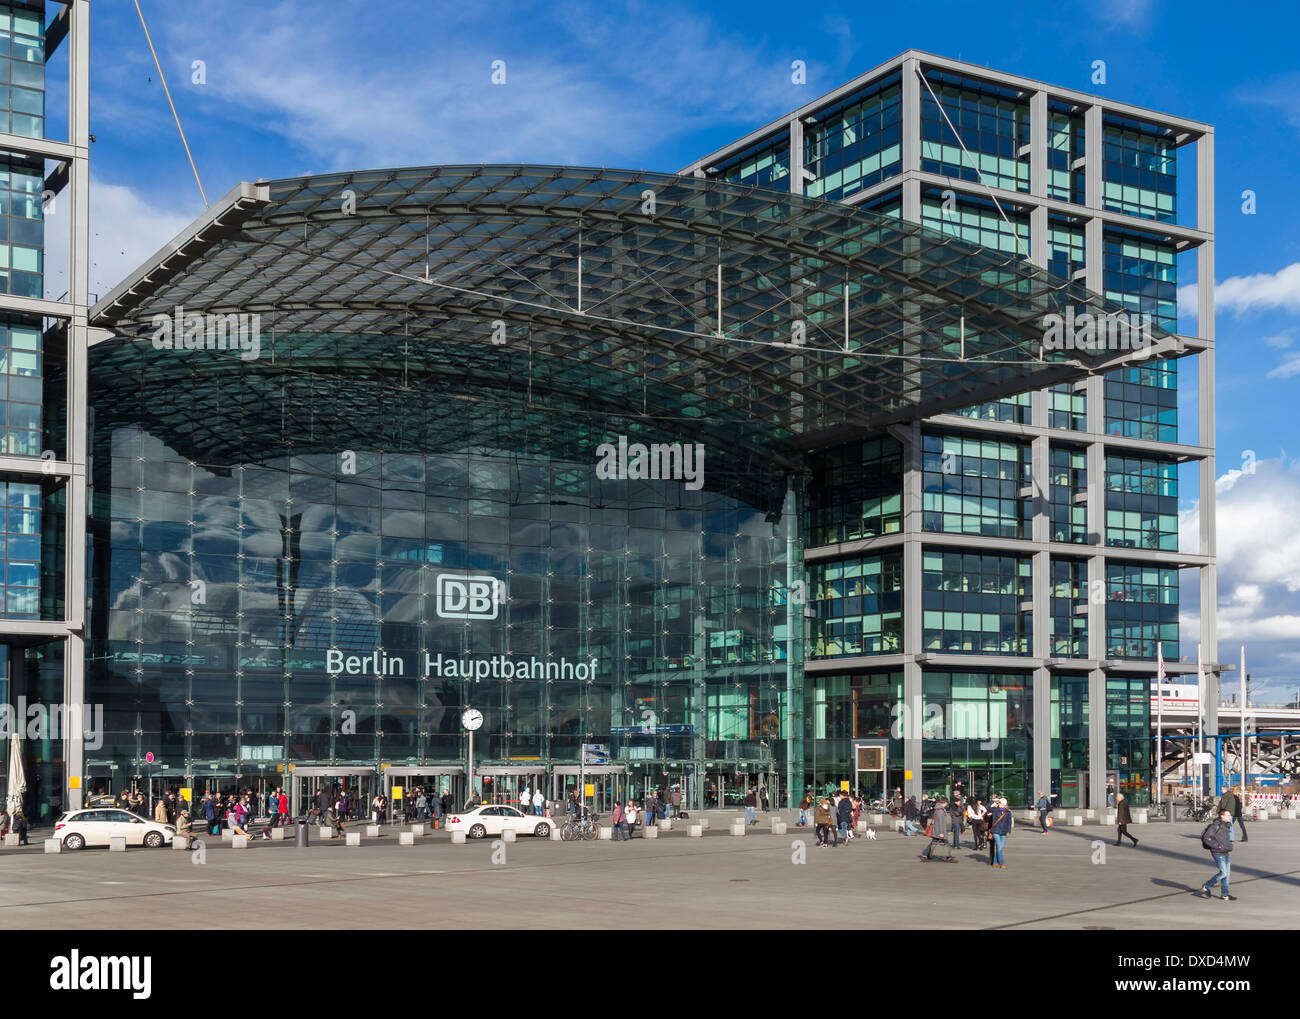 Estación de trenes Hauptbahnhof Berlín, Alemania, Europa - la principal estación de ferrocarril central en Berlín. Foto de stock